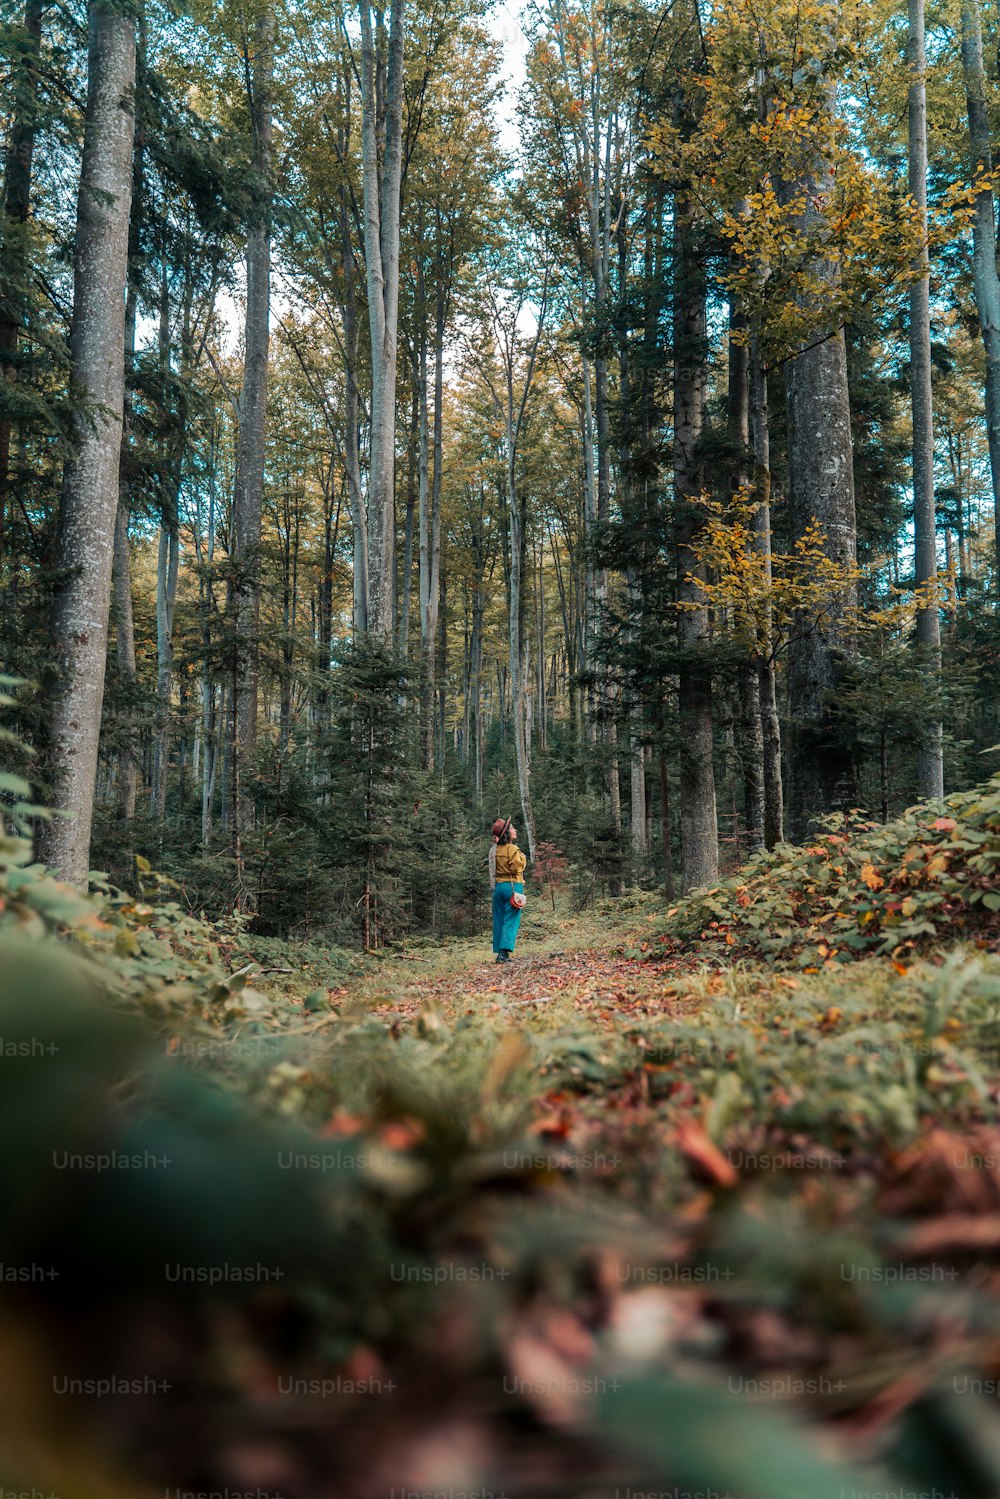 une personne marchant dans une forêt avec beaucoup d’arbres